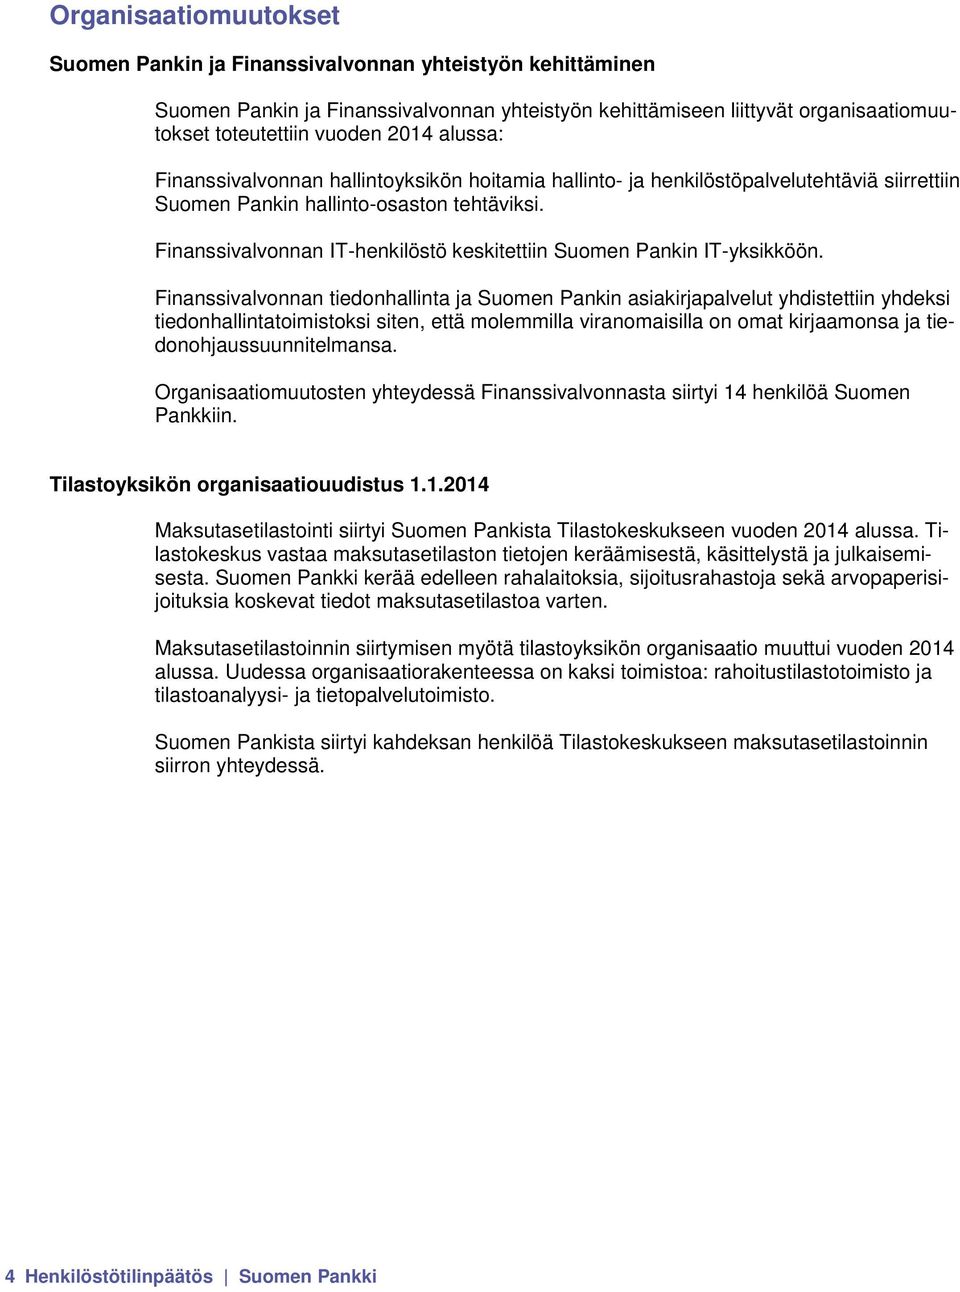 Finanssivalvonnan IT-henkilöstö keskitettiin Suomen Pankin IT-yksikköön.